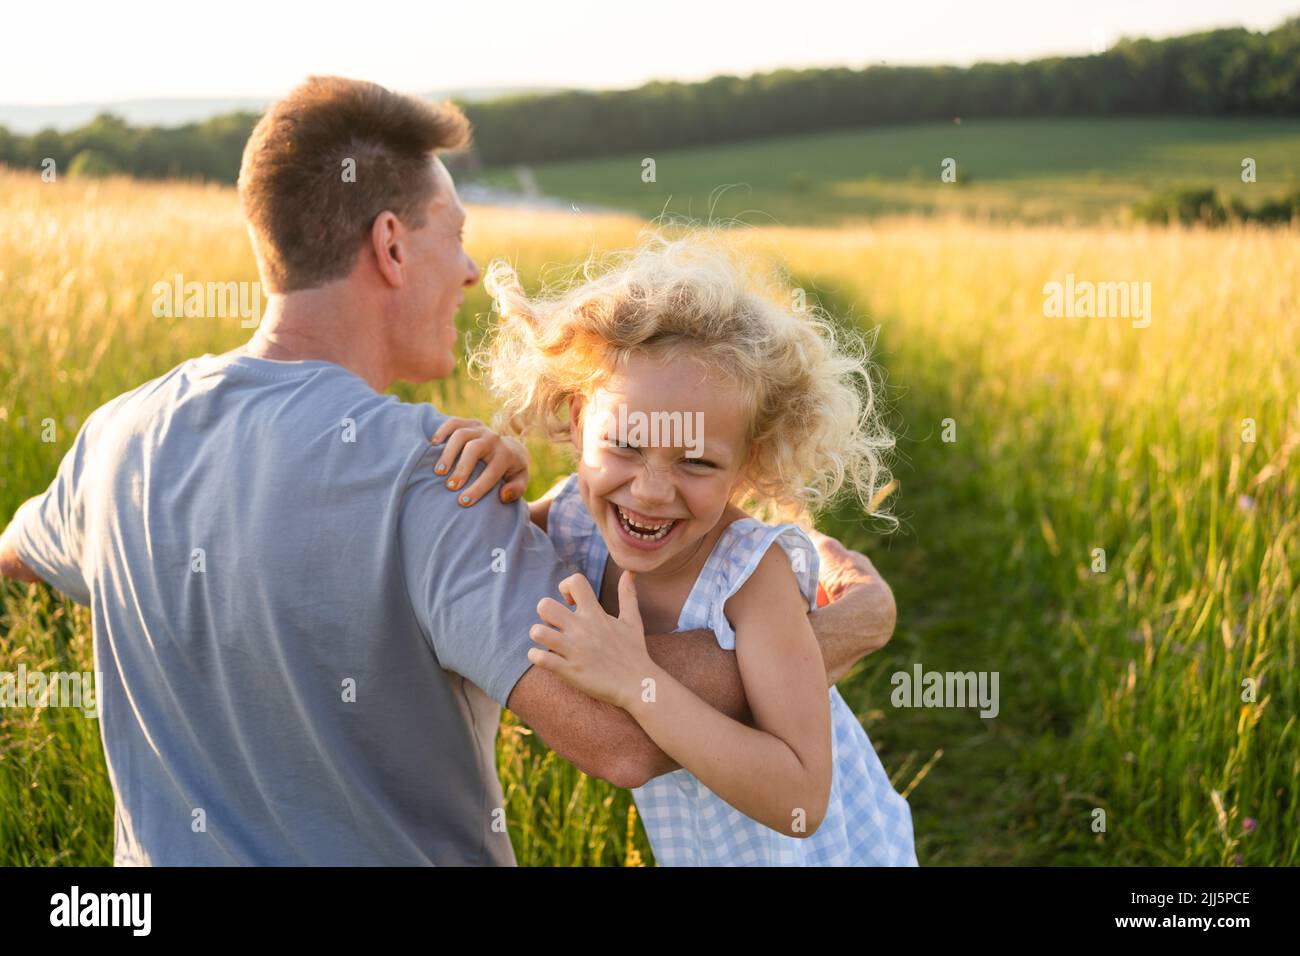 Fille blonde ludique appréciant avec le père sur le terrain Banque D'Images